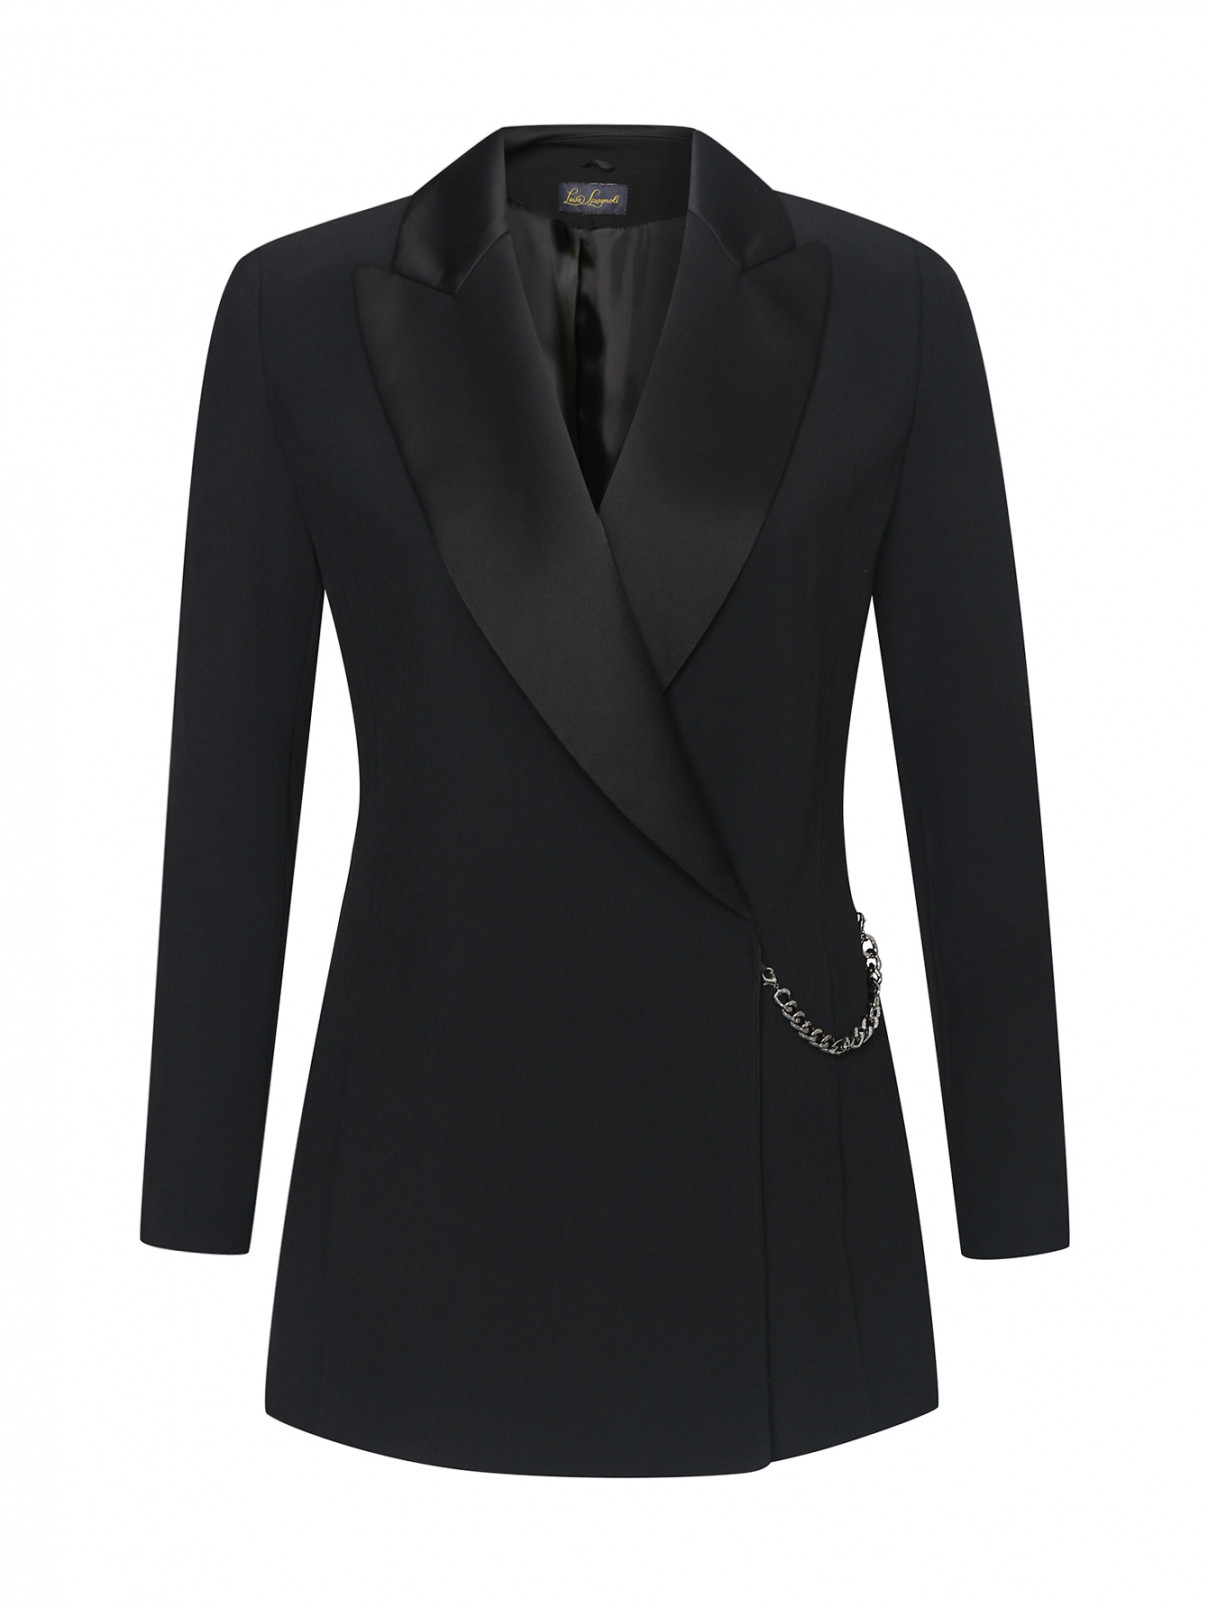 Однотонный пиджак с цепочкой Luisa Spagnoli  –  Общий вид  – Цвет:  Черный